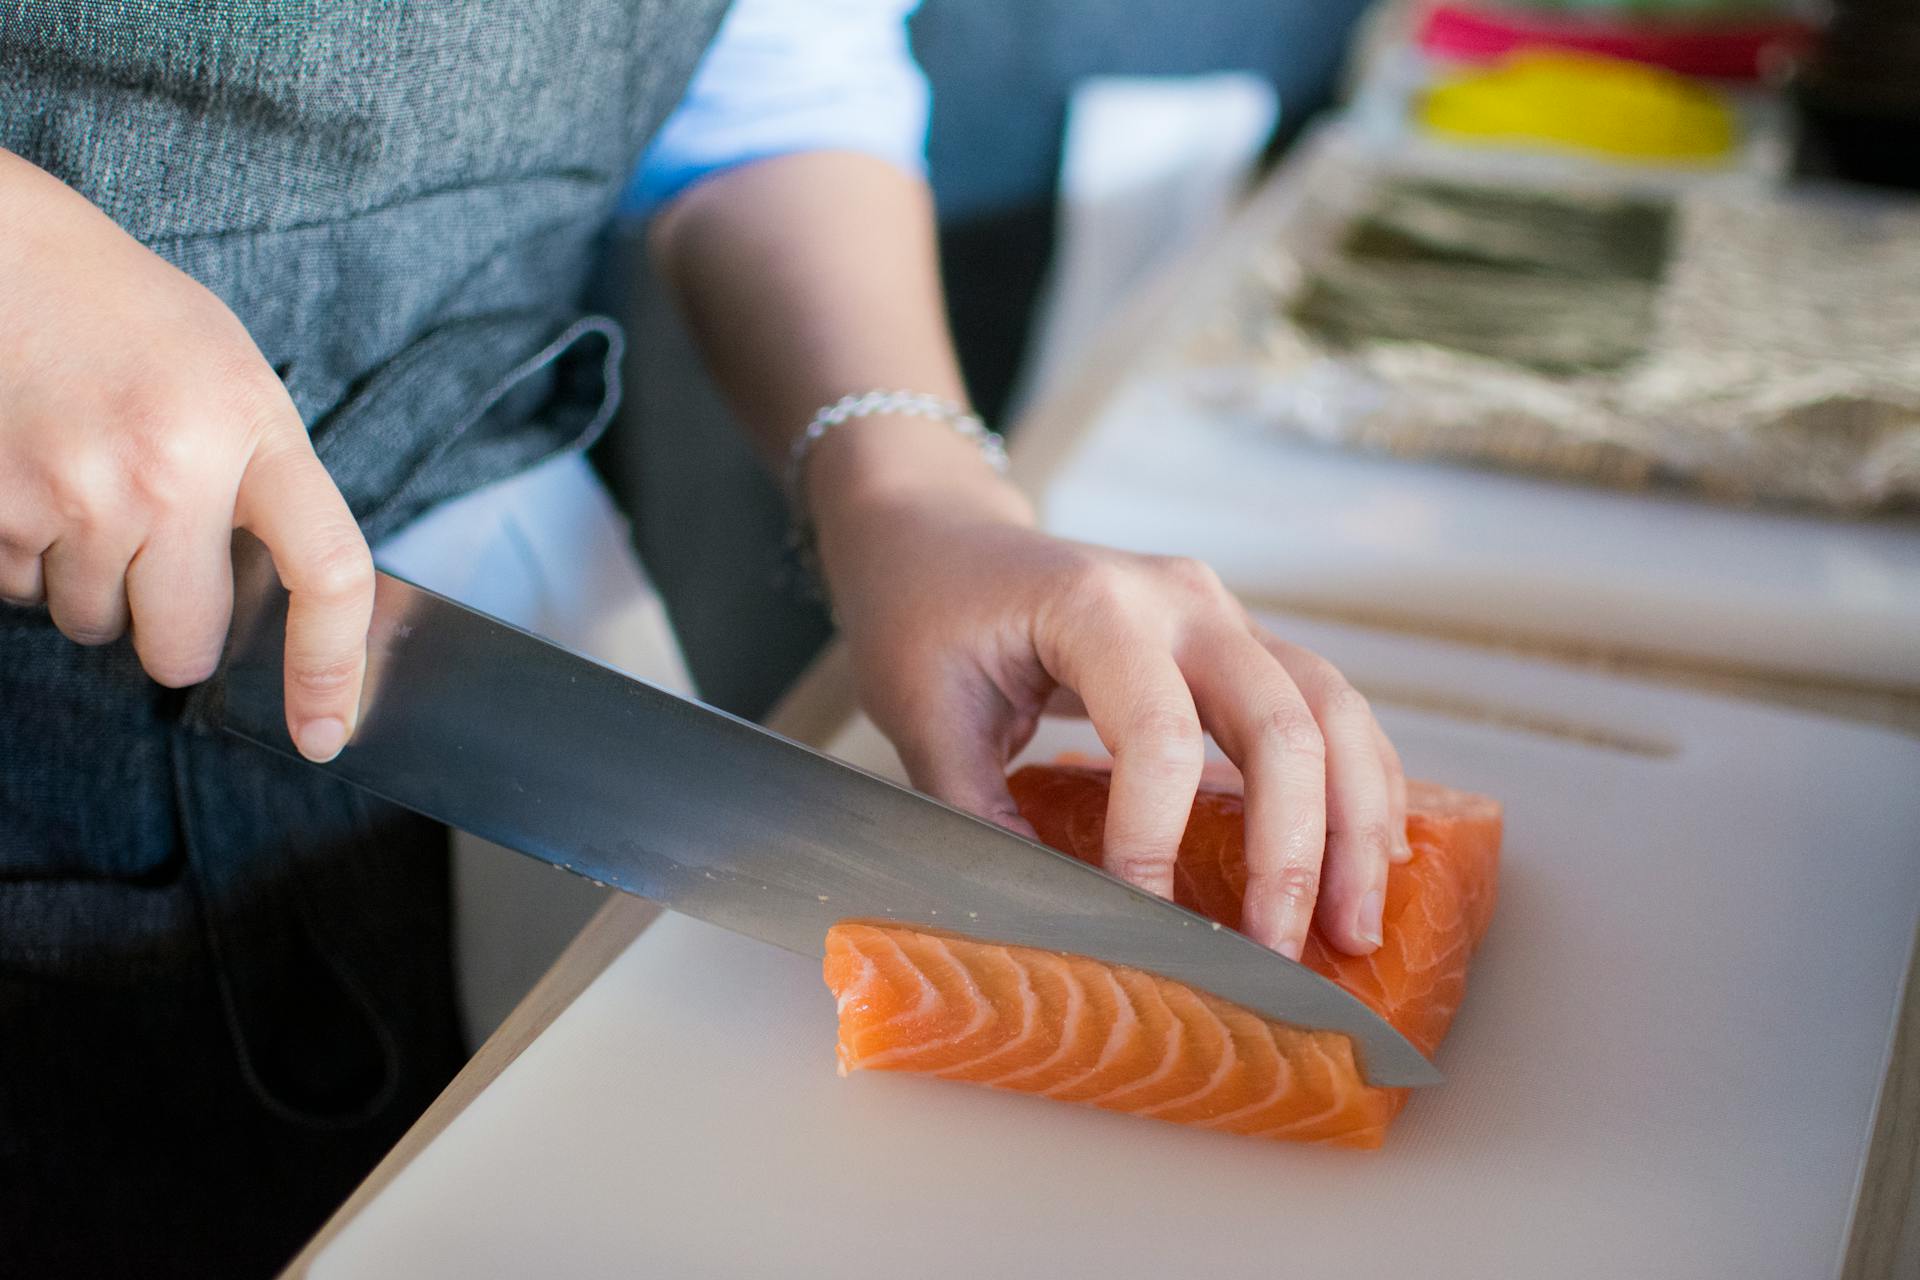 A person slicing a fish fillet | Source: Pexels